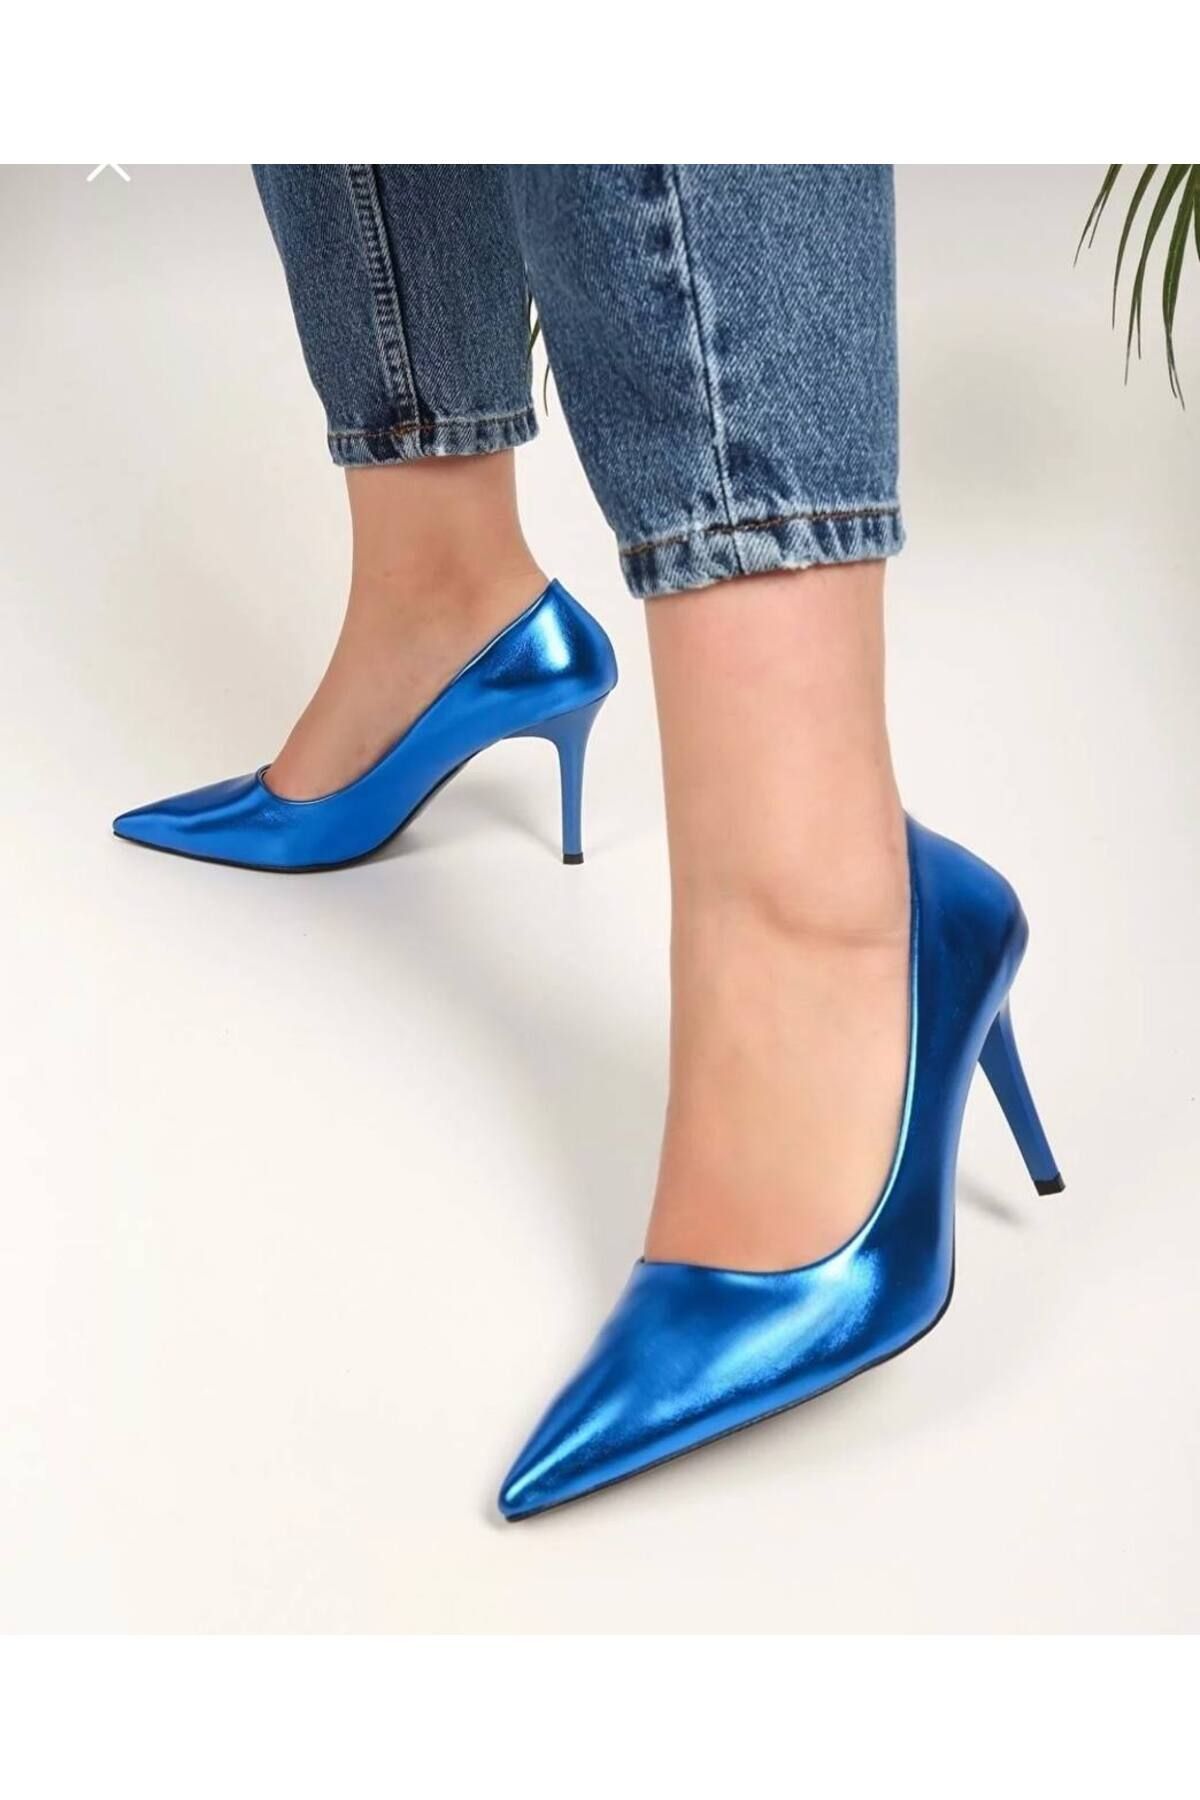 Essen Kadın metalik klasik topuklu ayakkabı stiletto